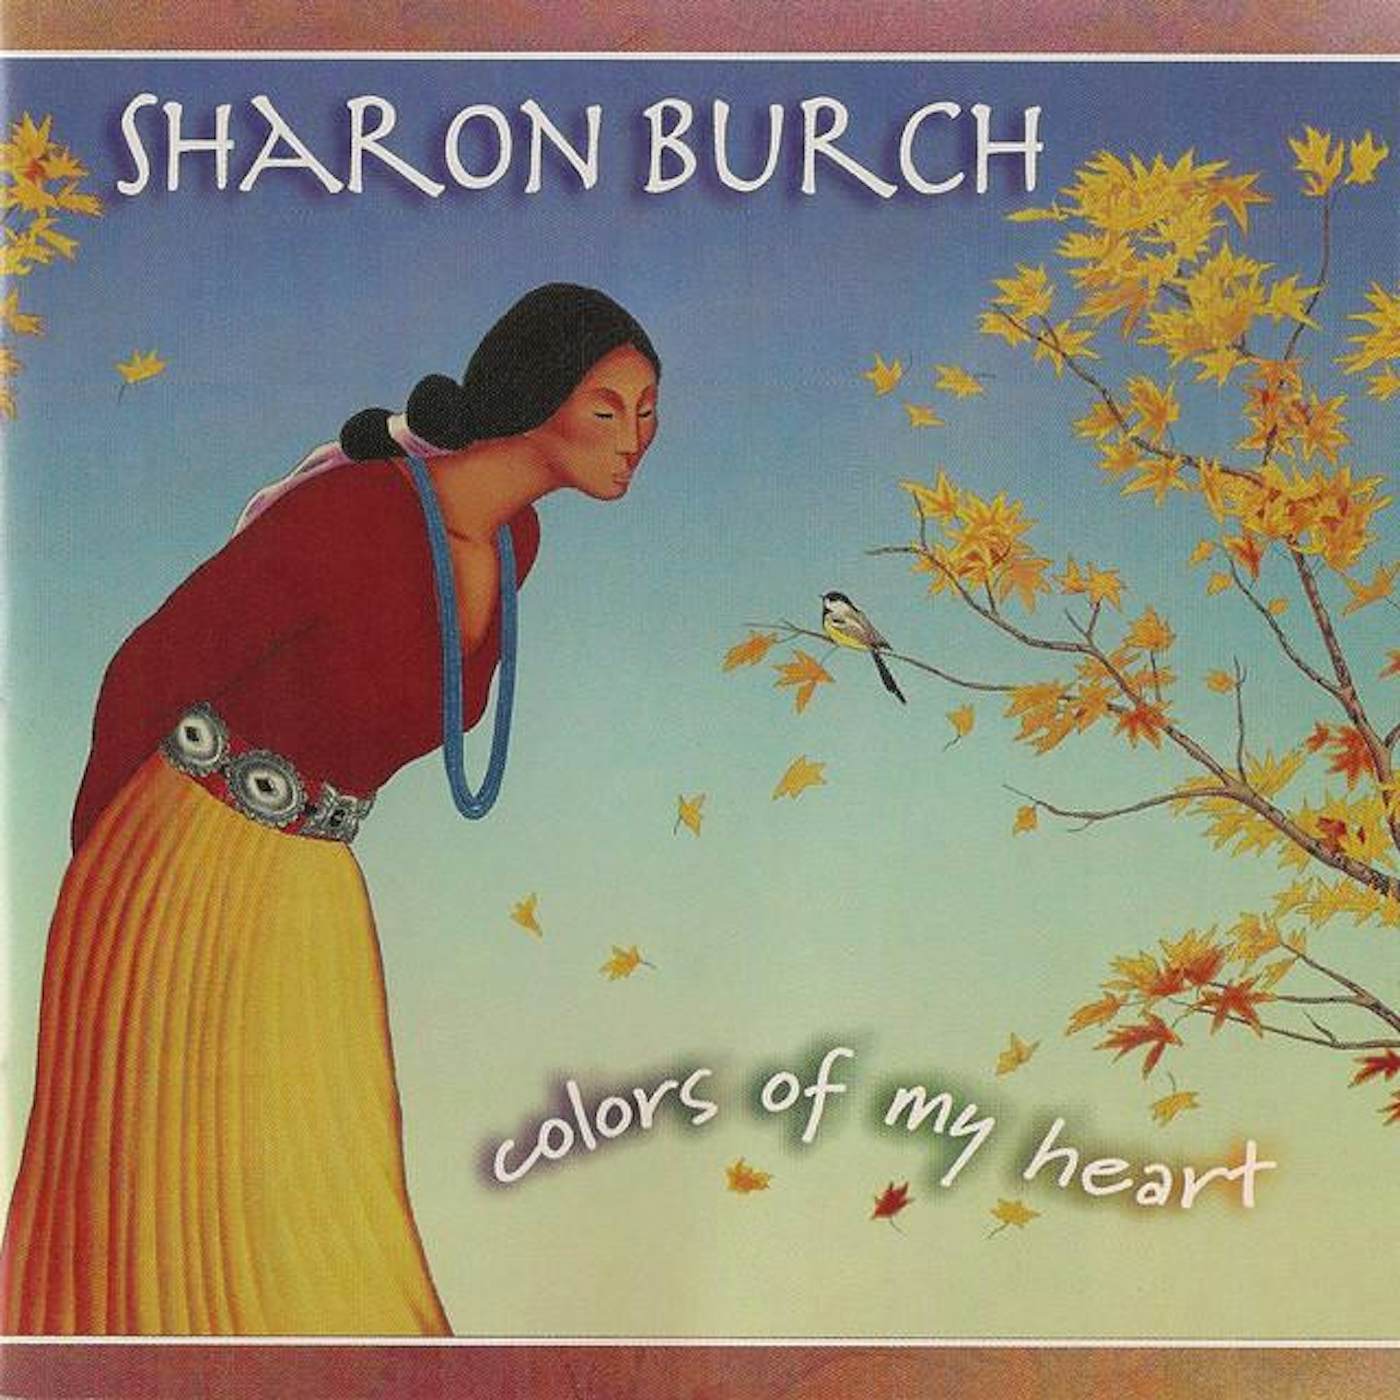 Sharon Burch